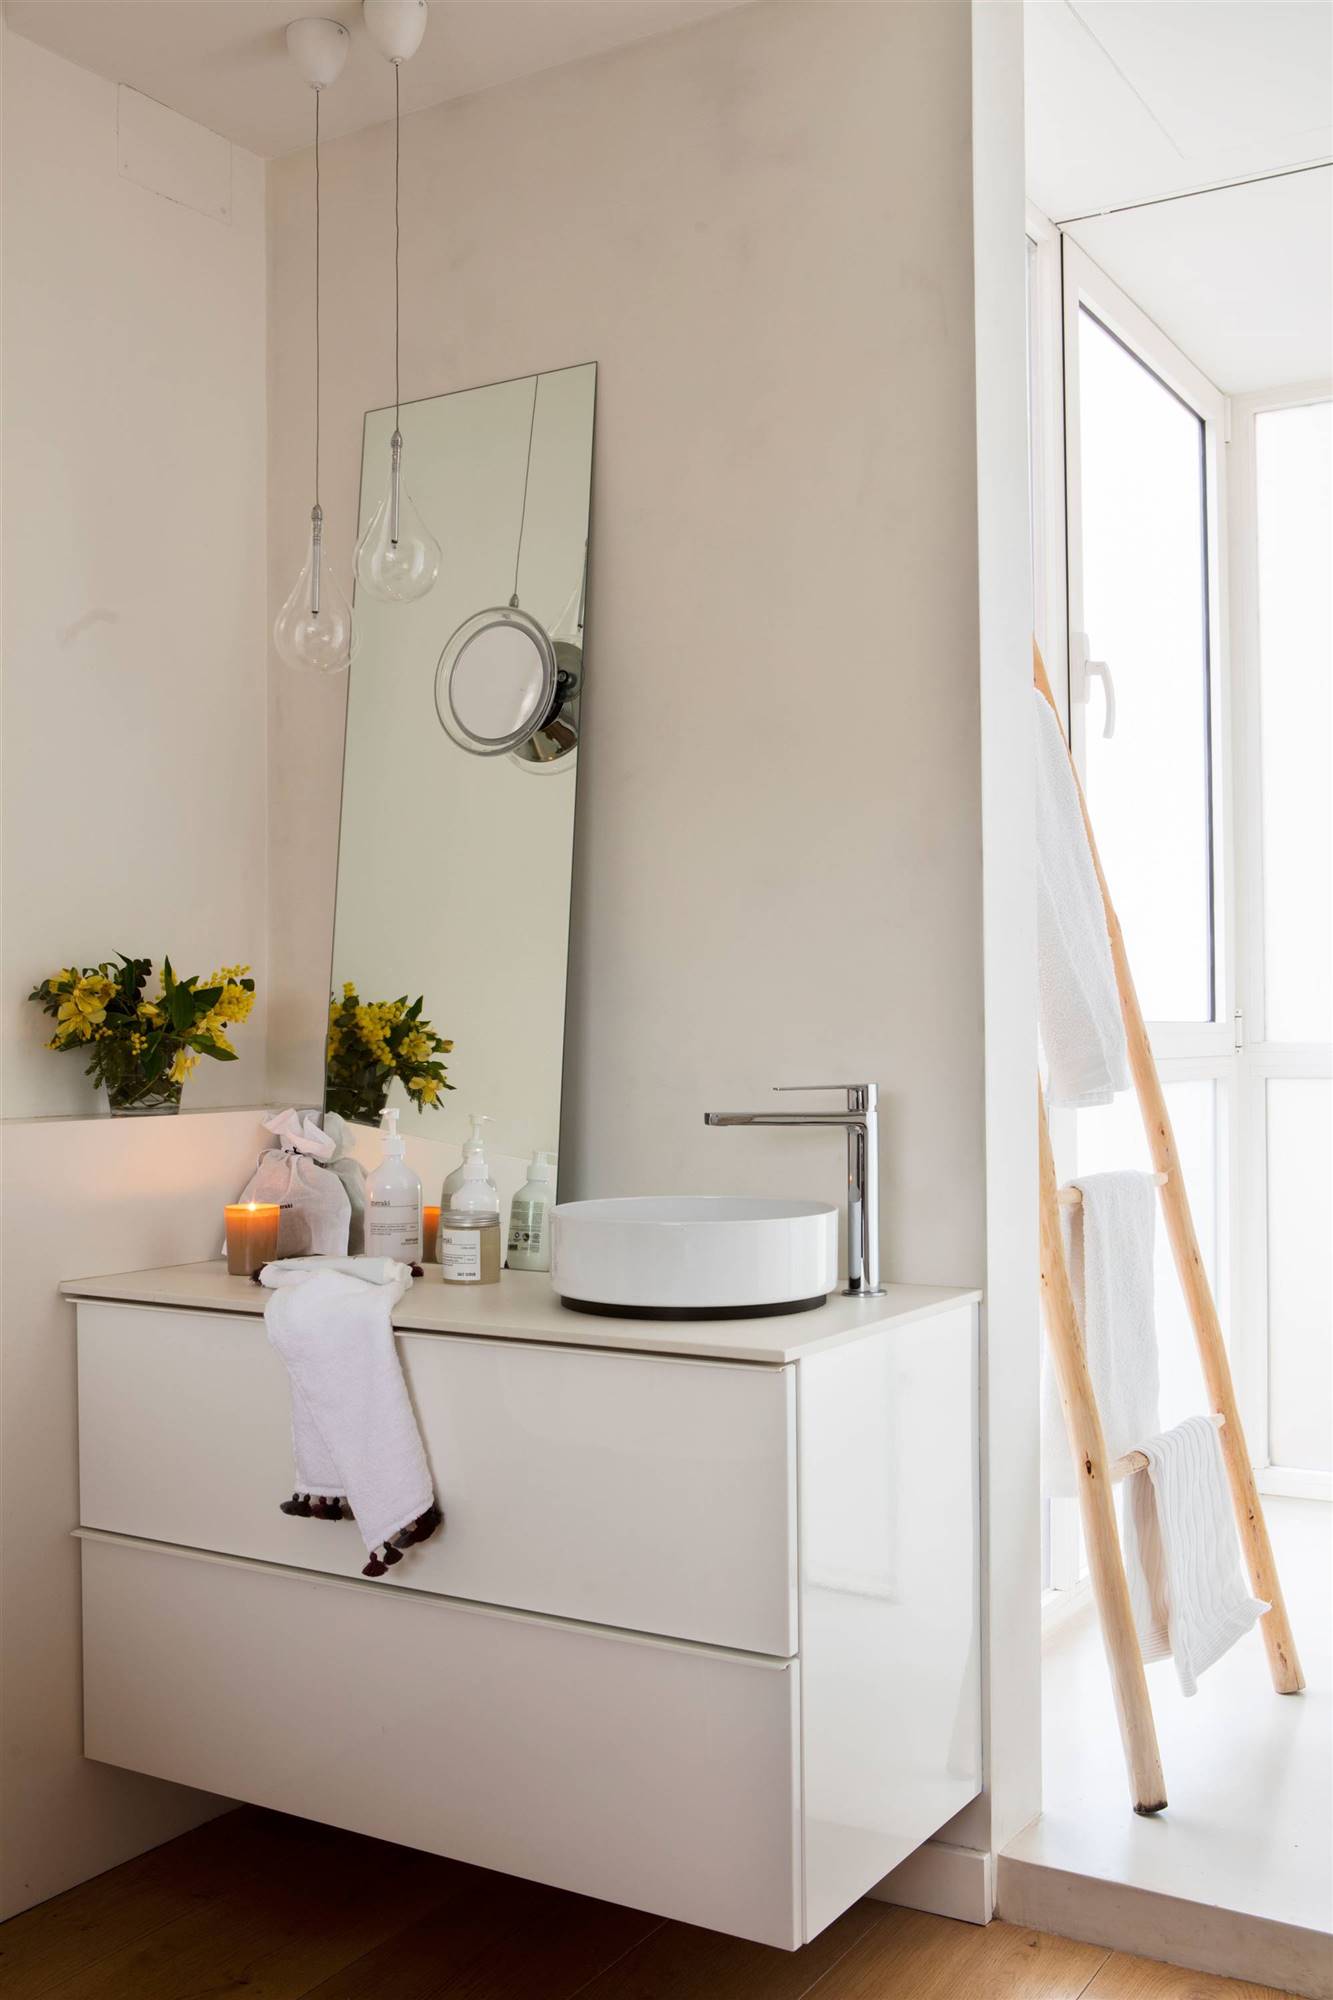 Baño moderno con mueble blanco y espejo apoyado. 